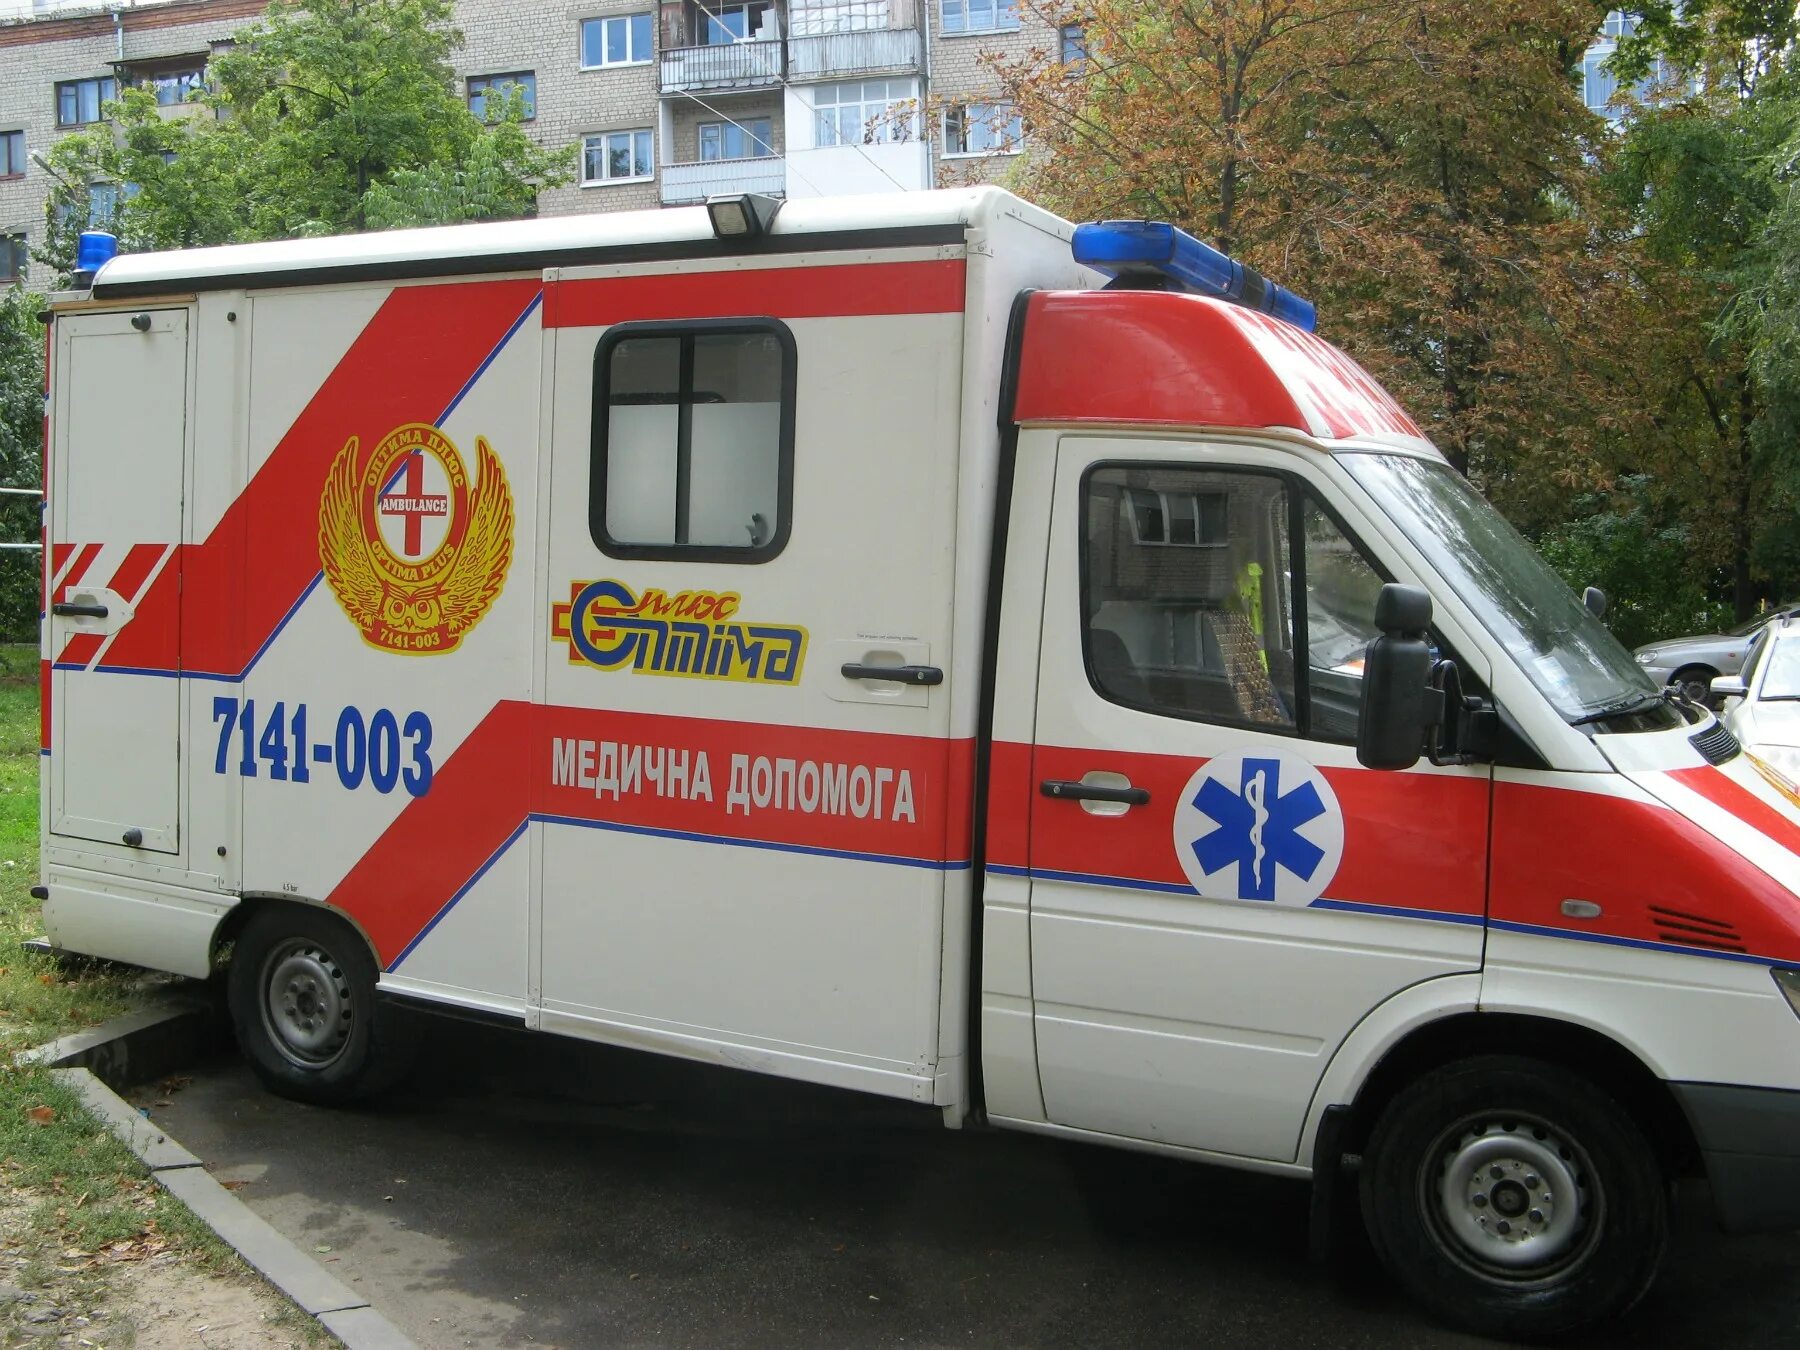 Телефон частной скорой. Машина частной скорой помощи. Машины скорой помощи Украины. Частные скорые помощи. Бронированный автомобиль скорой помощи.